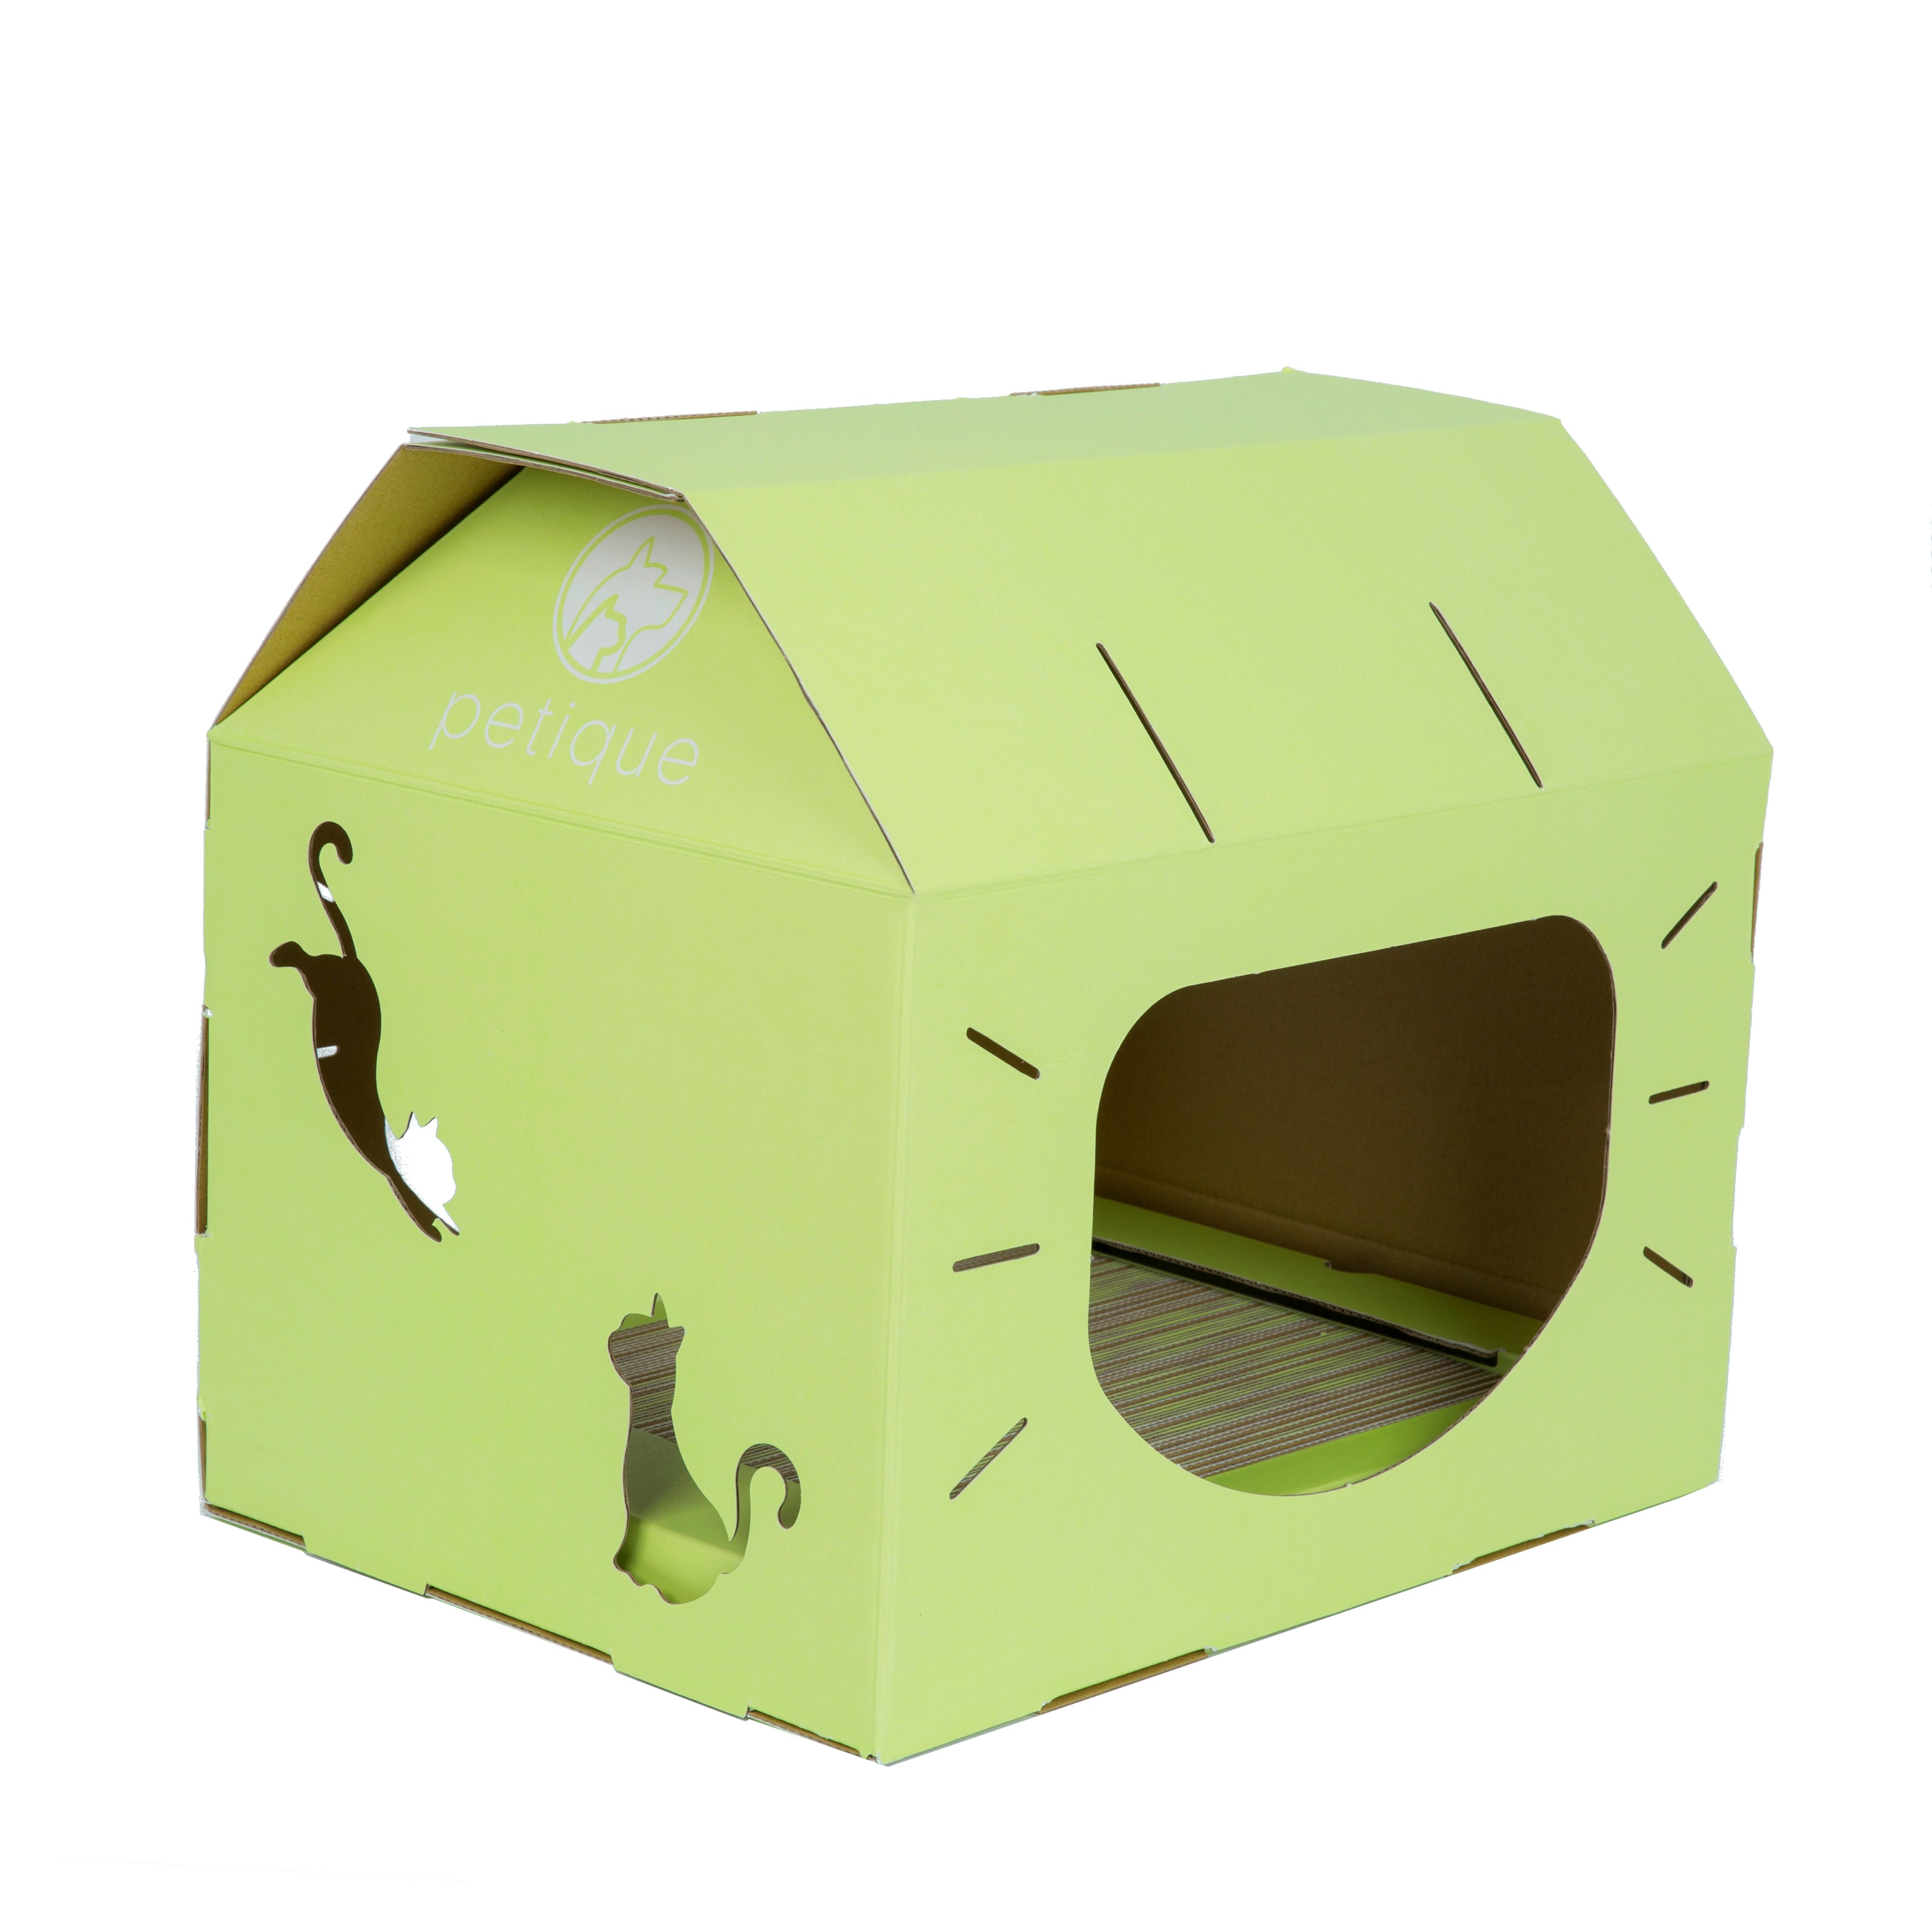 Feline Loft Cat House - Wasabi Green